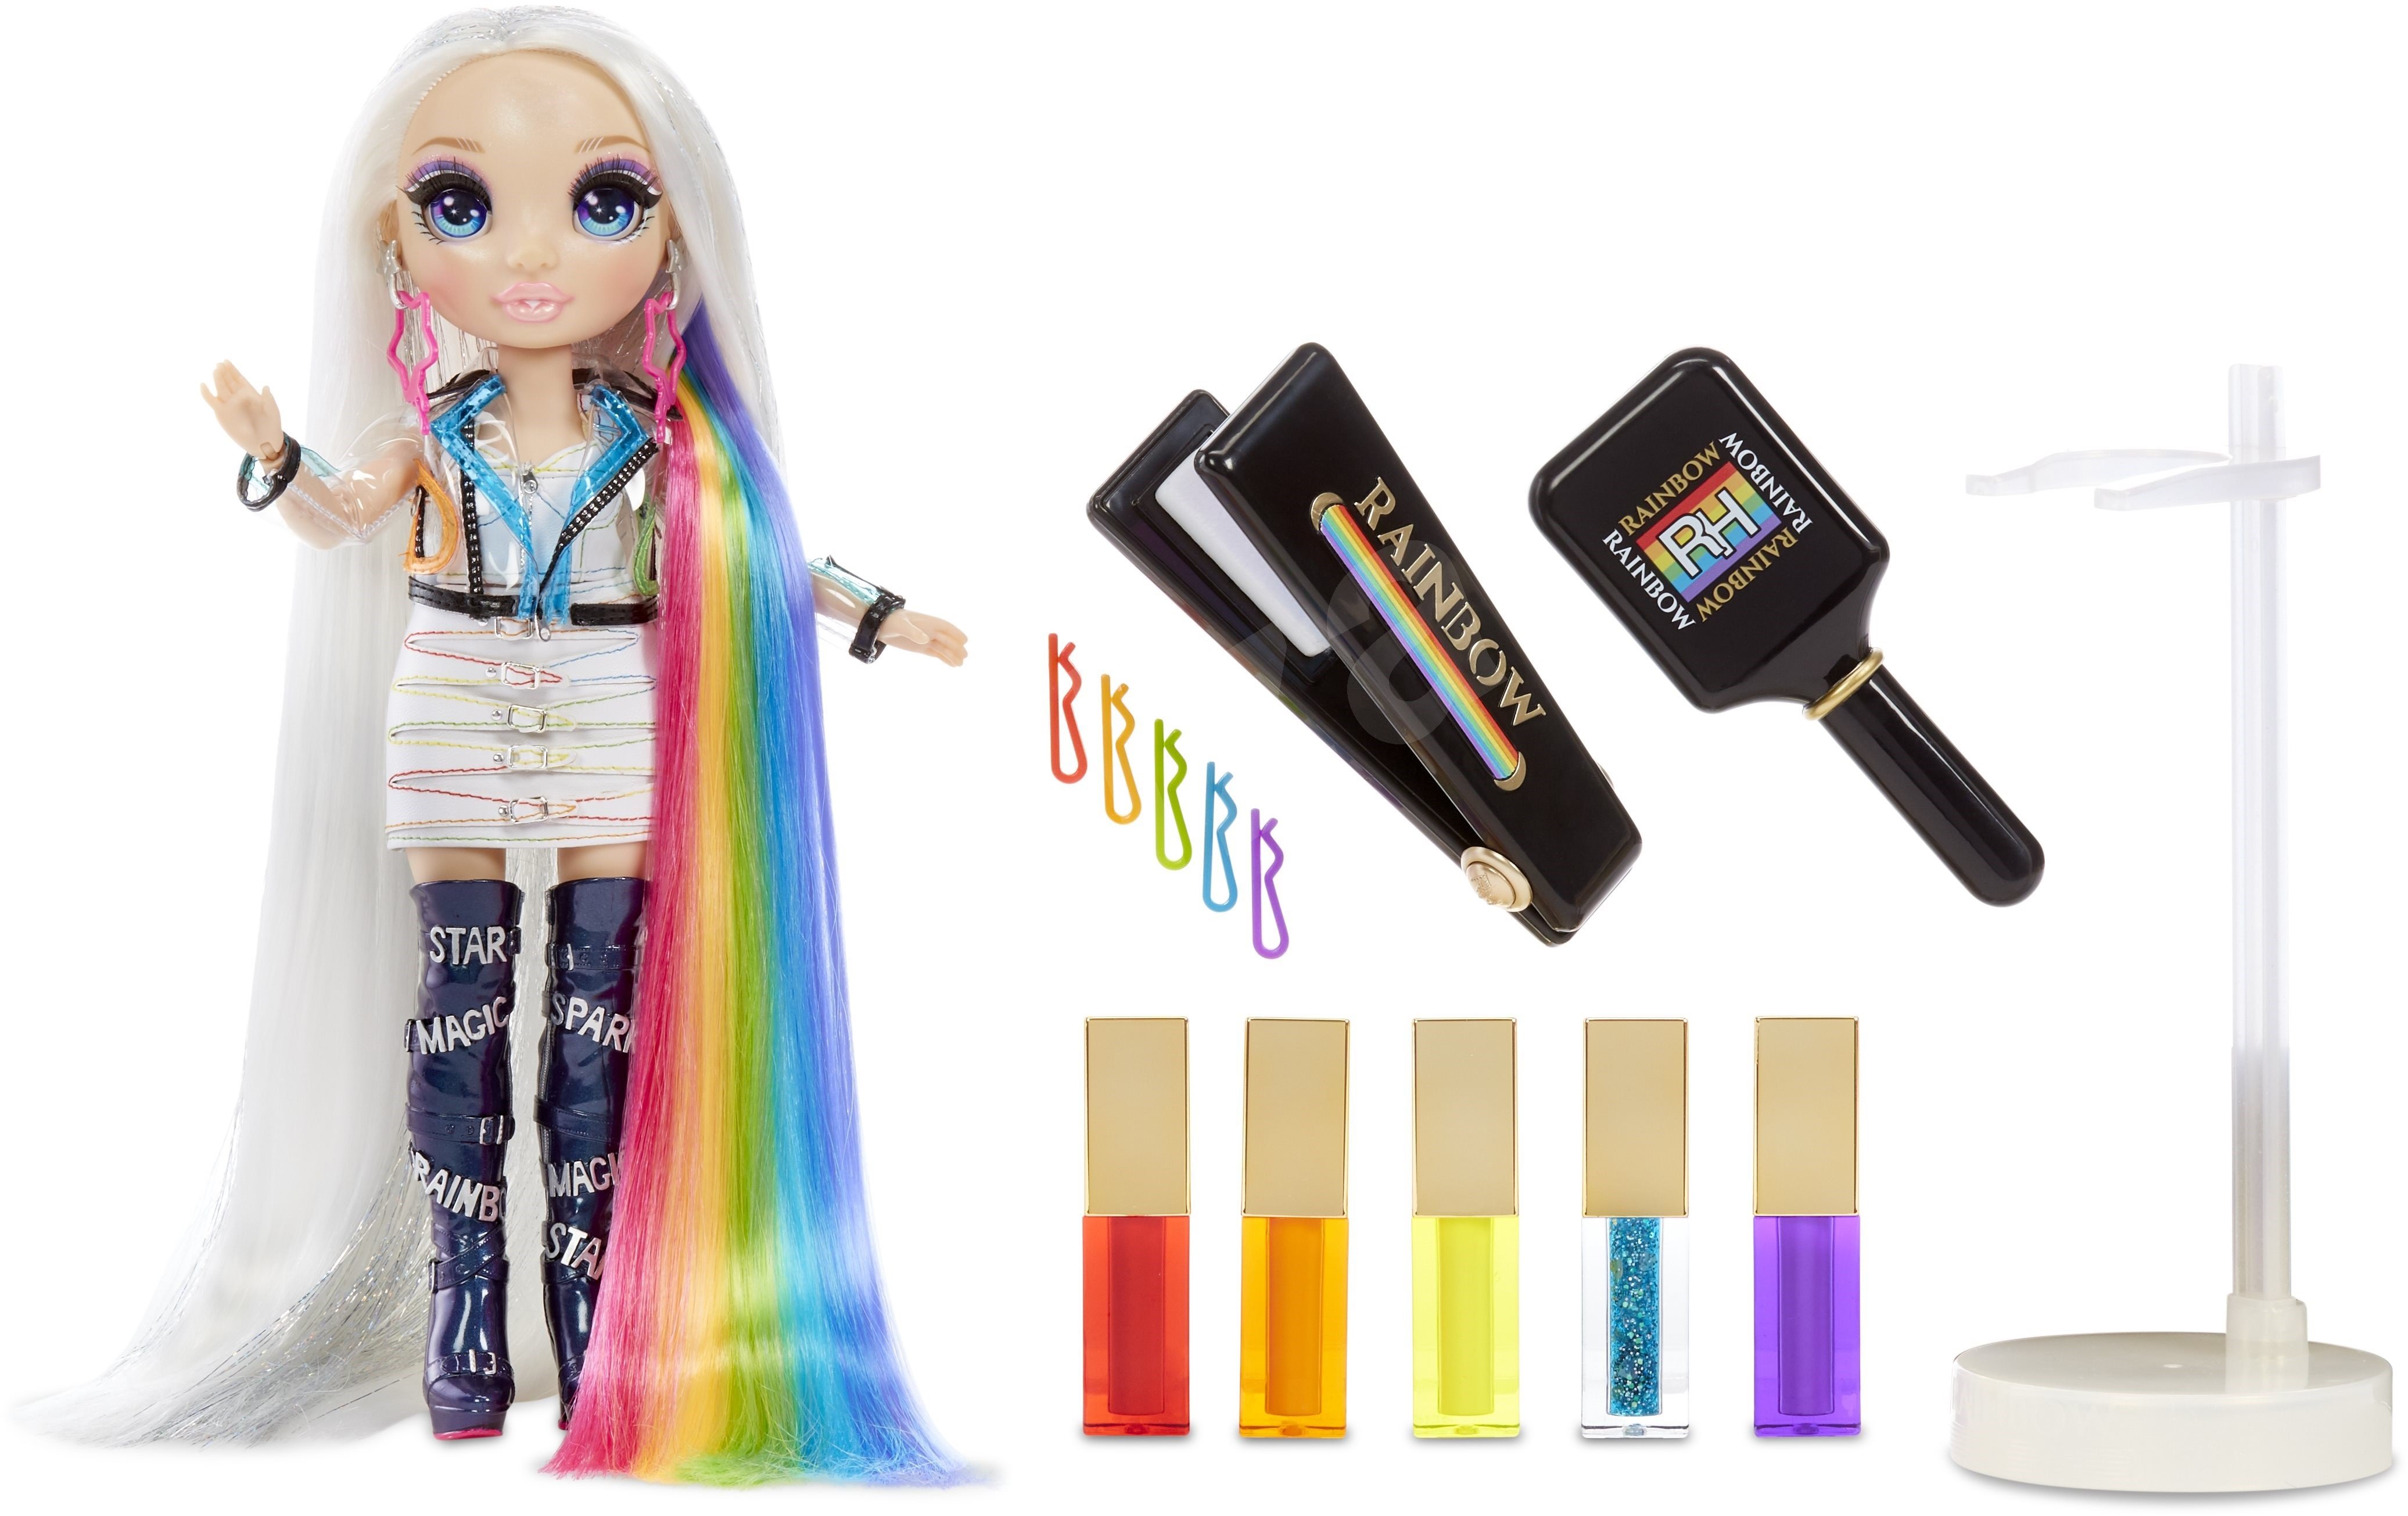 Rainbow High Hair Studio with Doll Игровой набор с эксклюзивной куклой